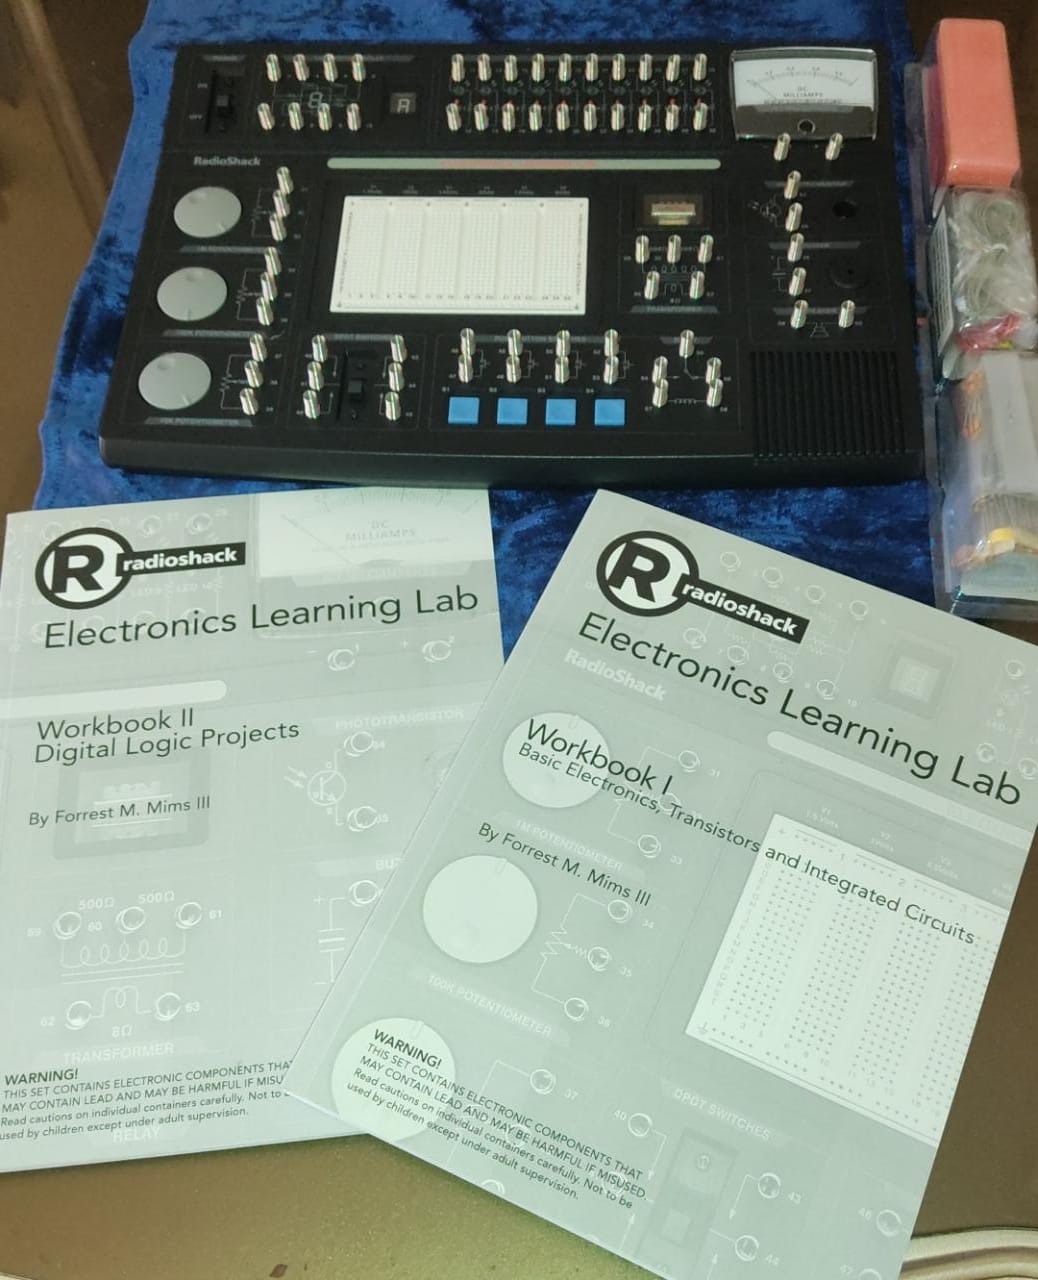 accesorios para electronica - Laboratorio de Aprendizaje de electrónica Radioshack